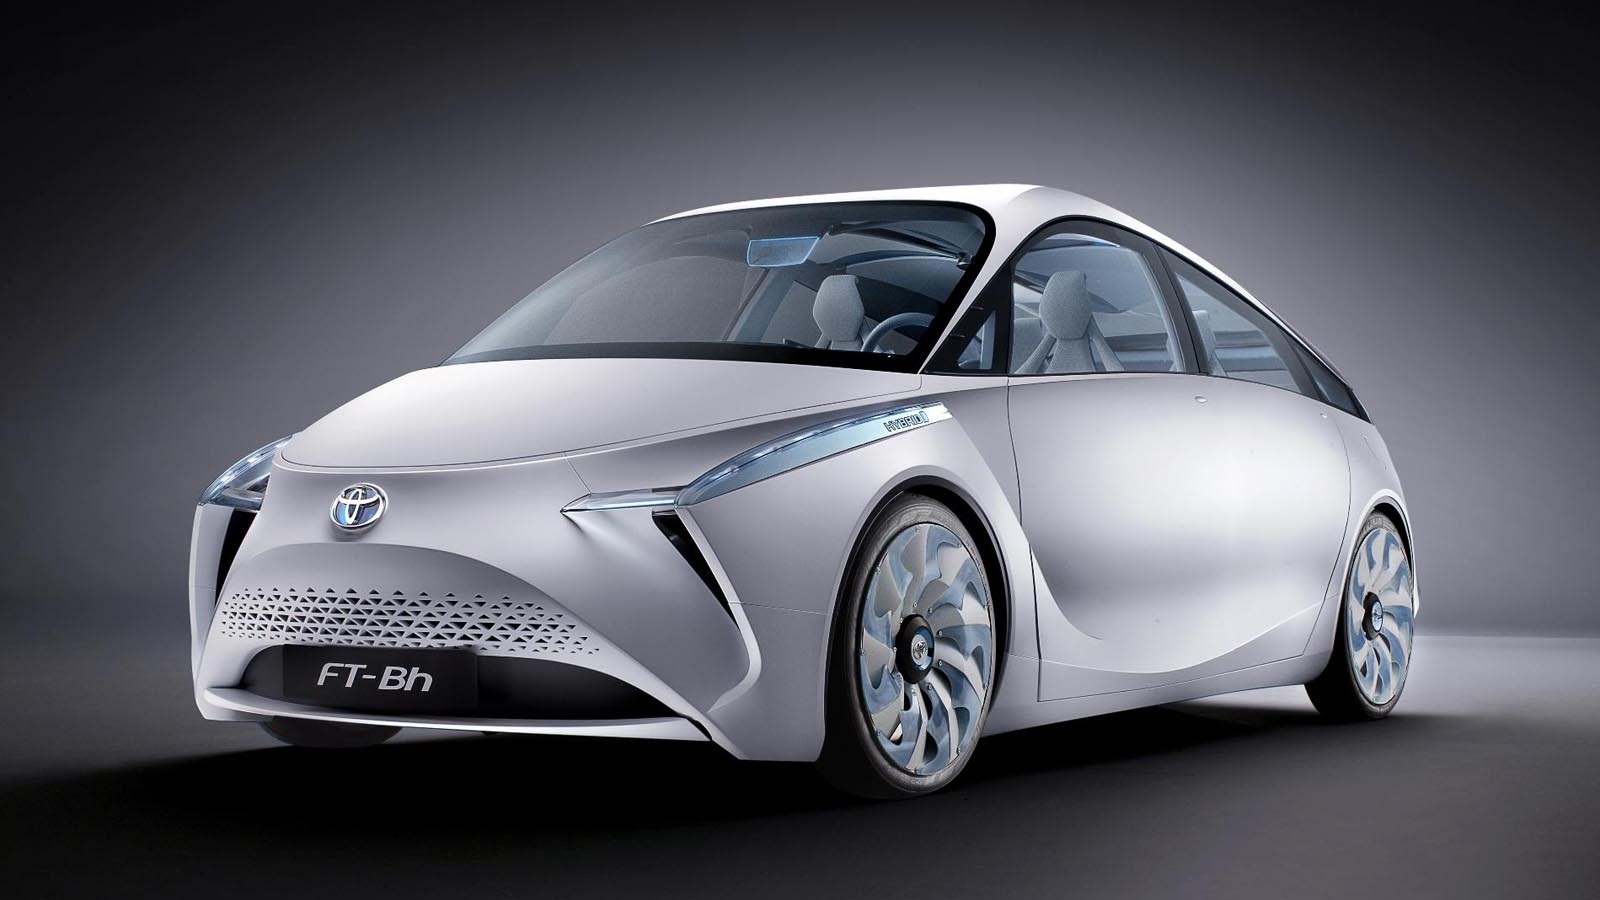 Designul ciudat al conceptului Toyota FT-Bh se conformeaza aerodinamicii